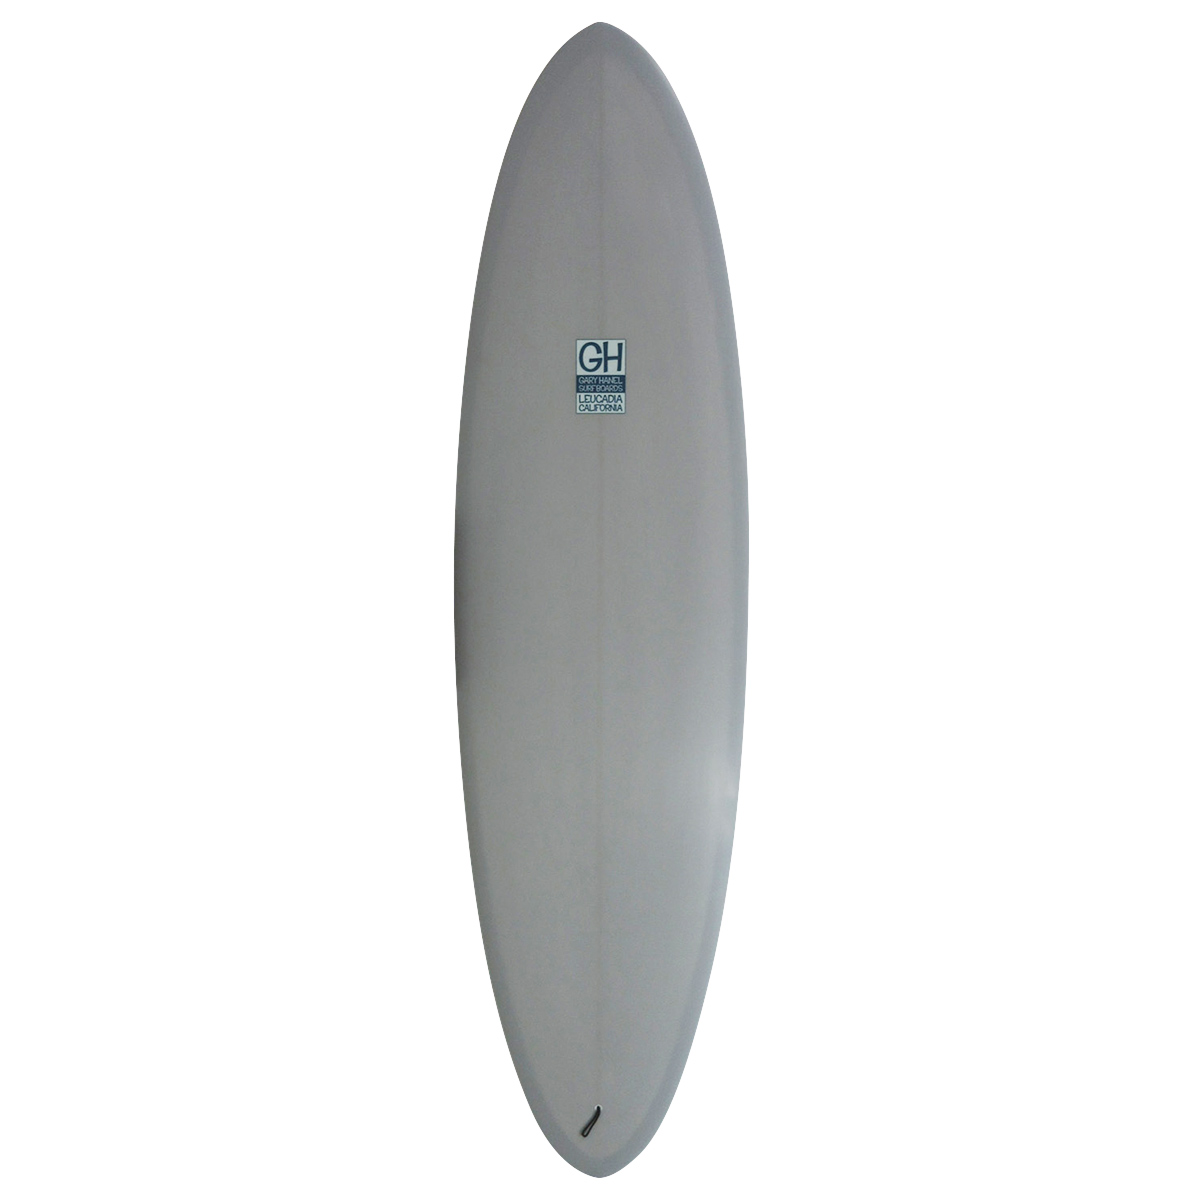 Gary Hanel Surfboards : Bonzer Egg 6'9"